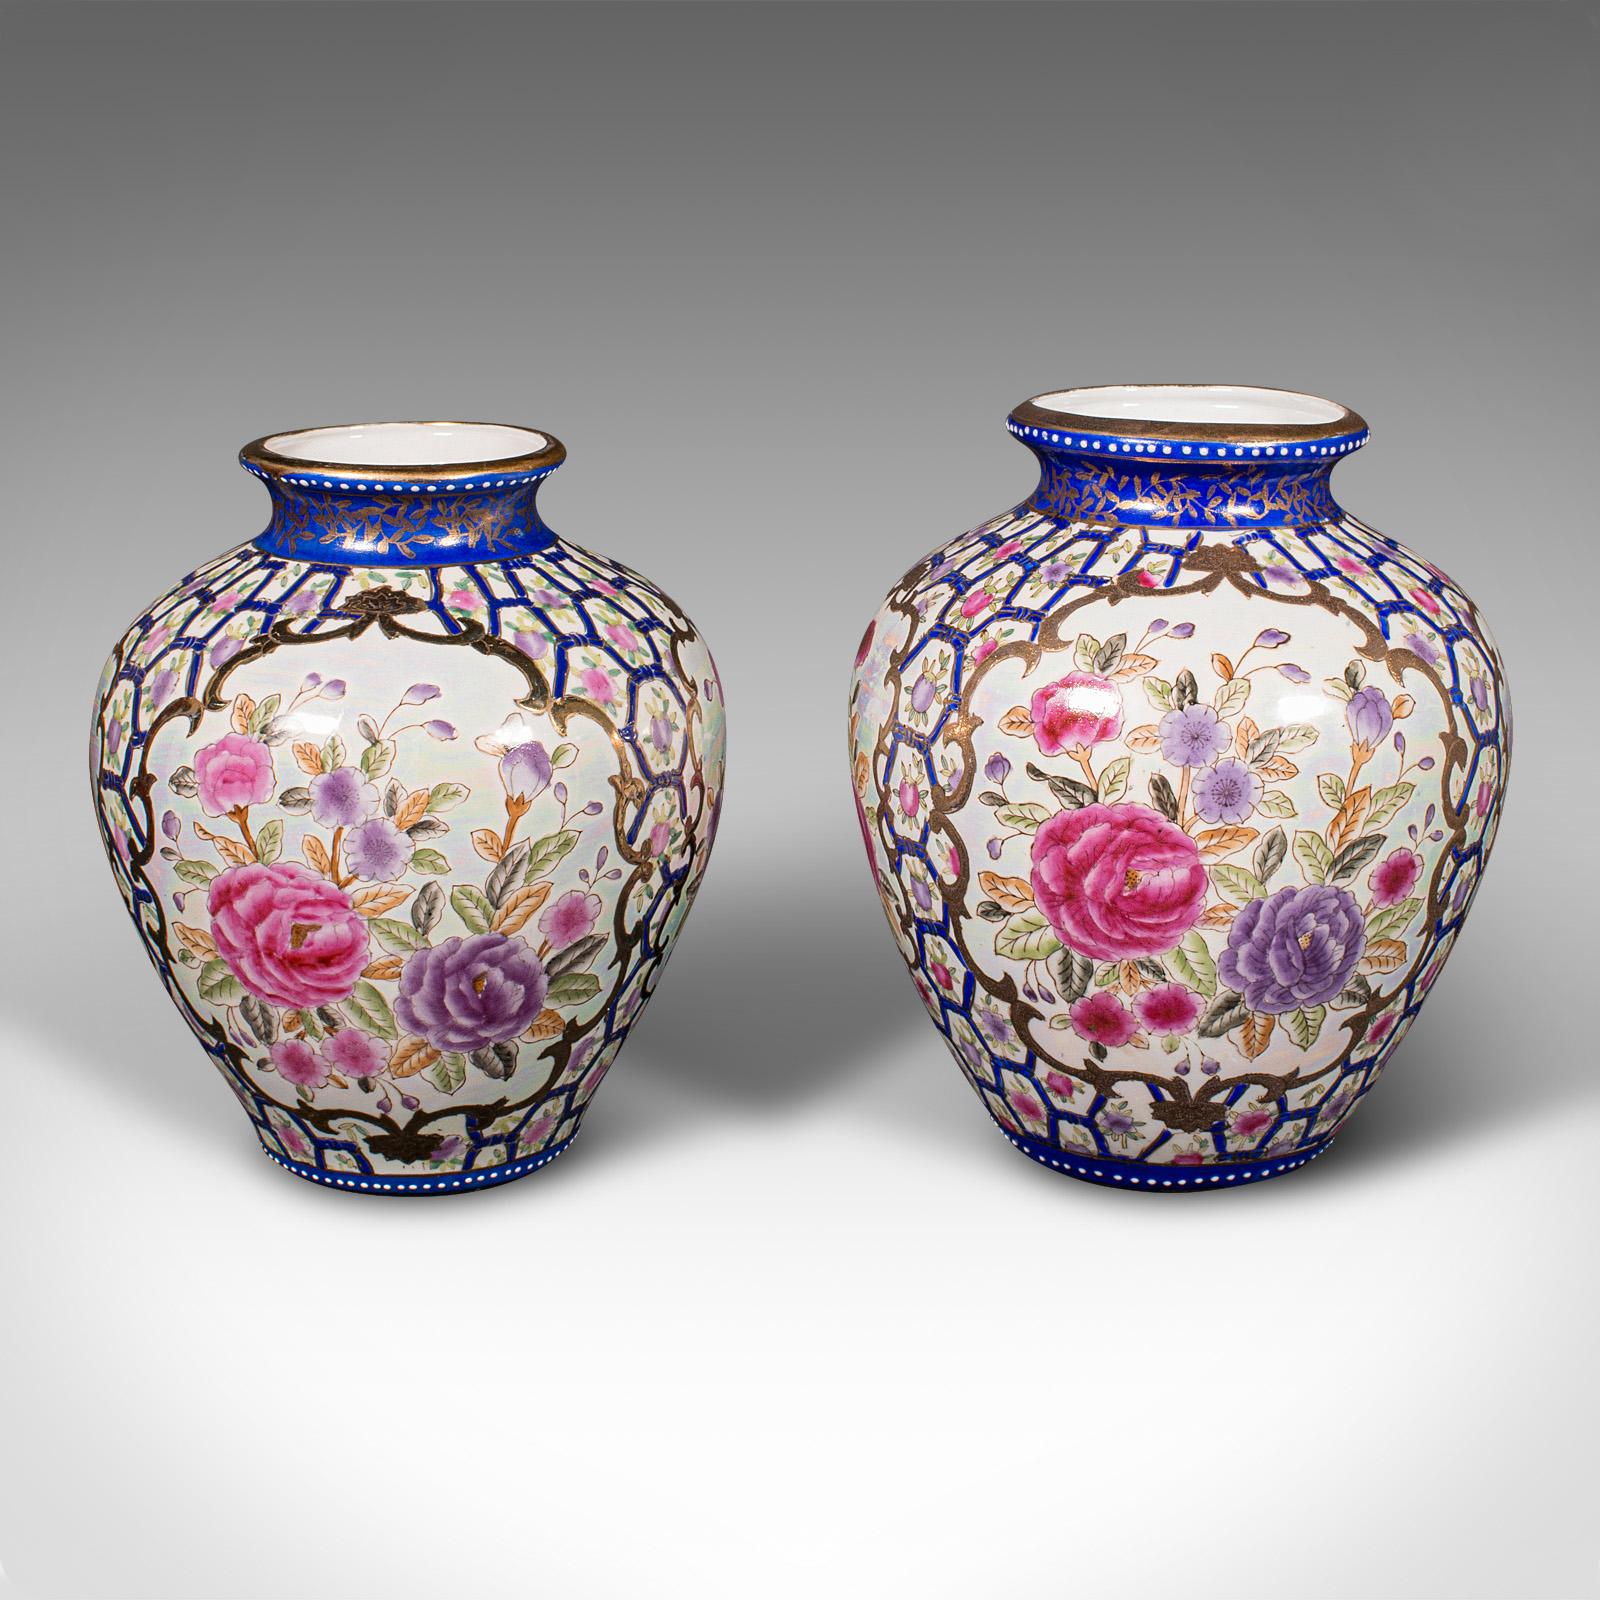 Il s'agit d'une paire artisanale de vases balustres vintage. Urne décorative chinoise en émail et lustre, peinte à la main, datant de la période Art déco, vers 1940.

Attrayante et tactile, avec un magnifique décor de feuillage
Présentant une patine